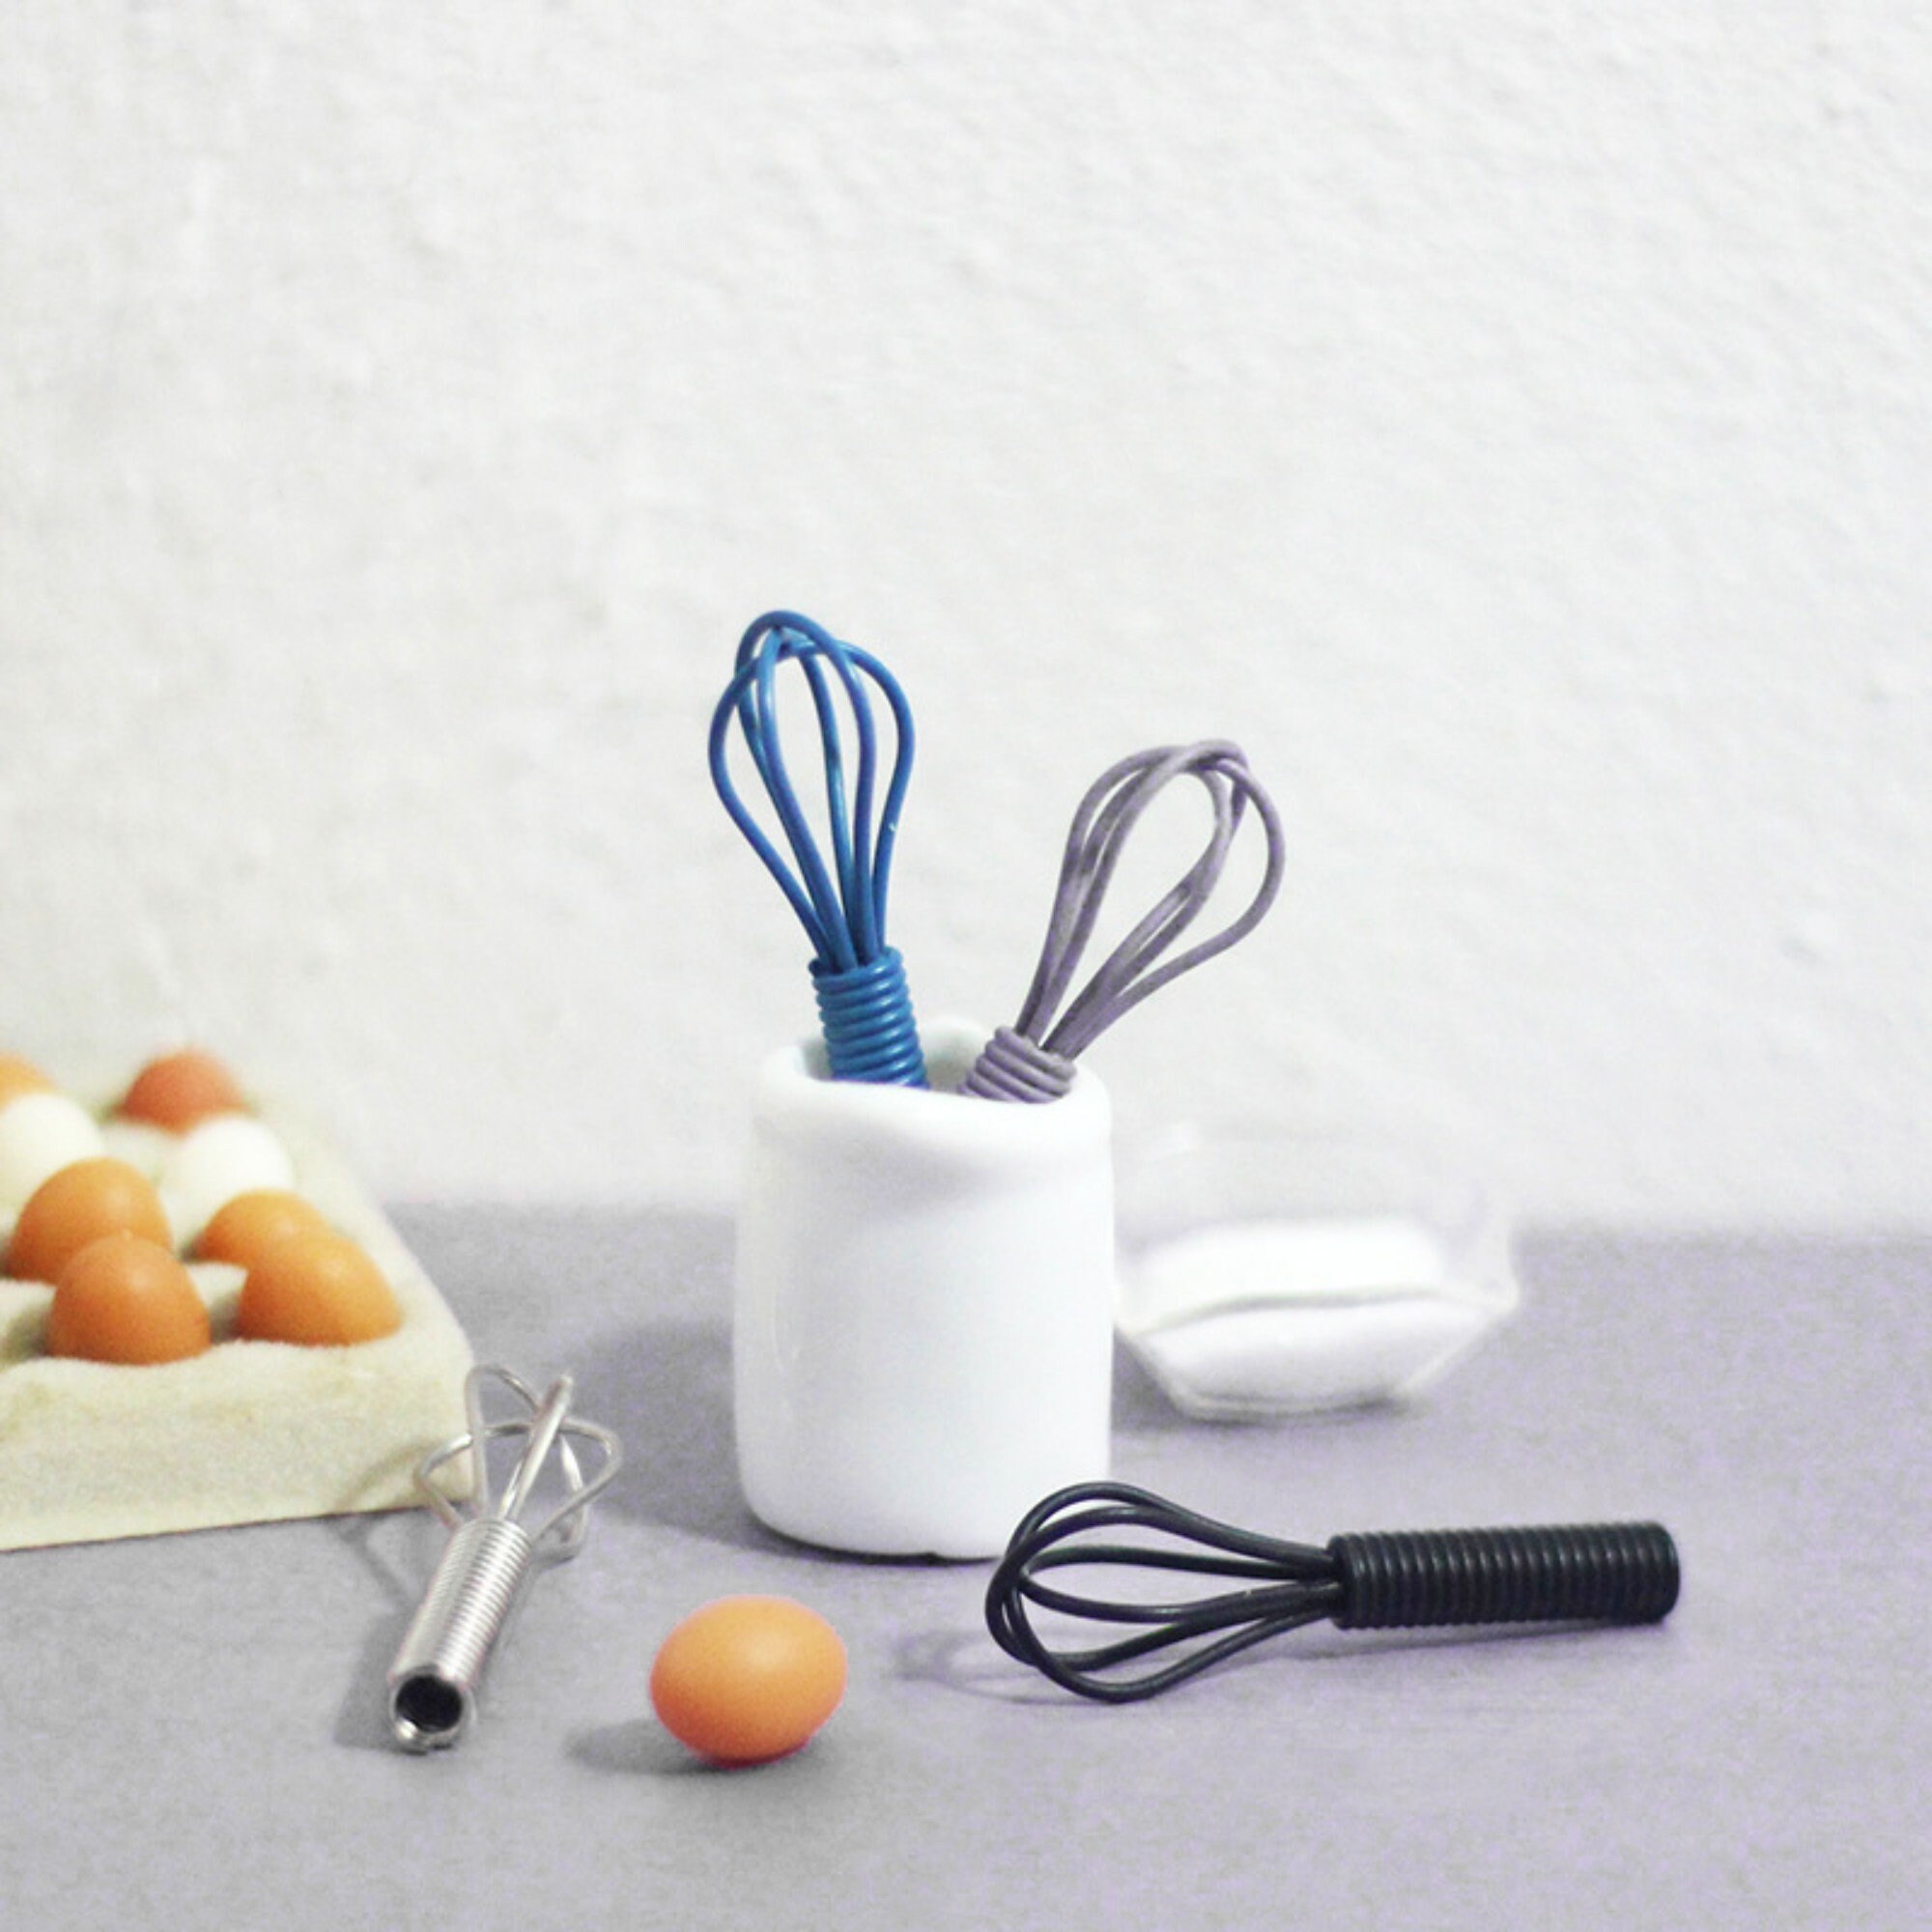 Miniature Kitchen Whisk, Mini Whisk, Miniature Egg Beater, MK143 